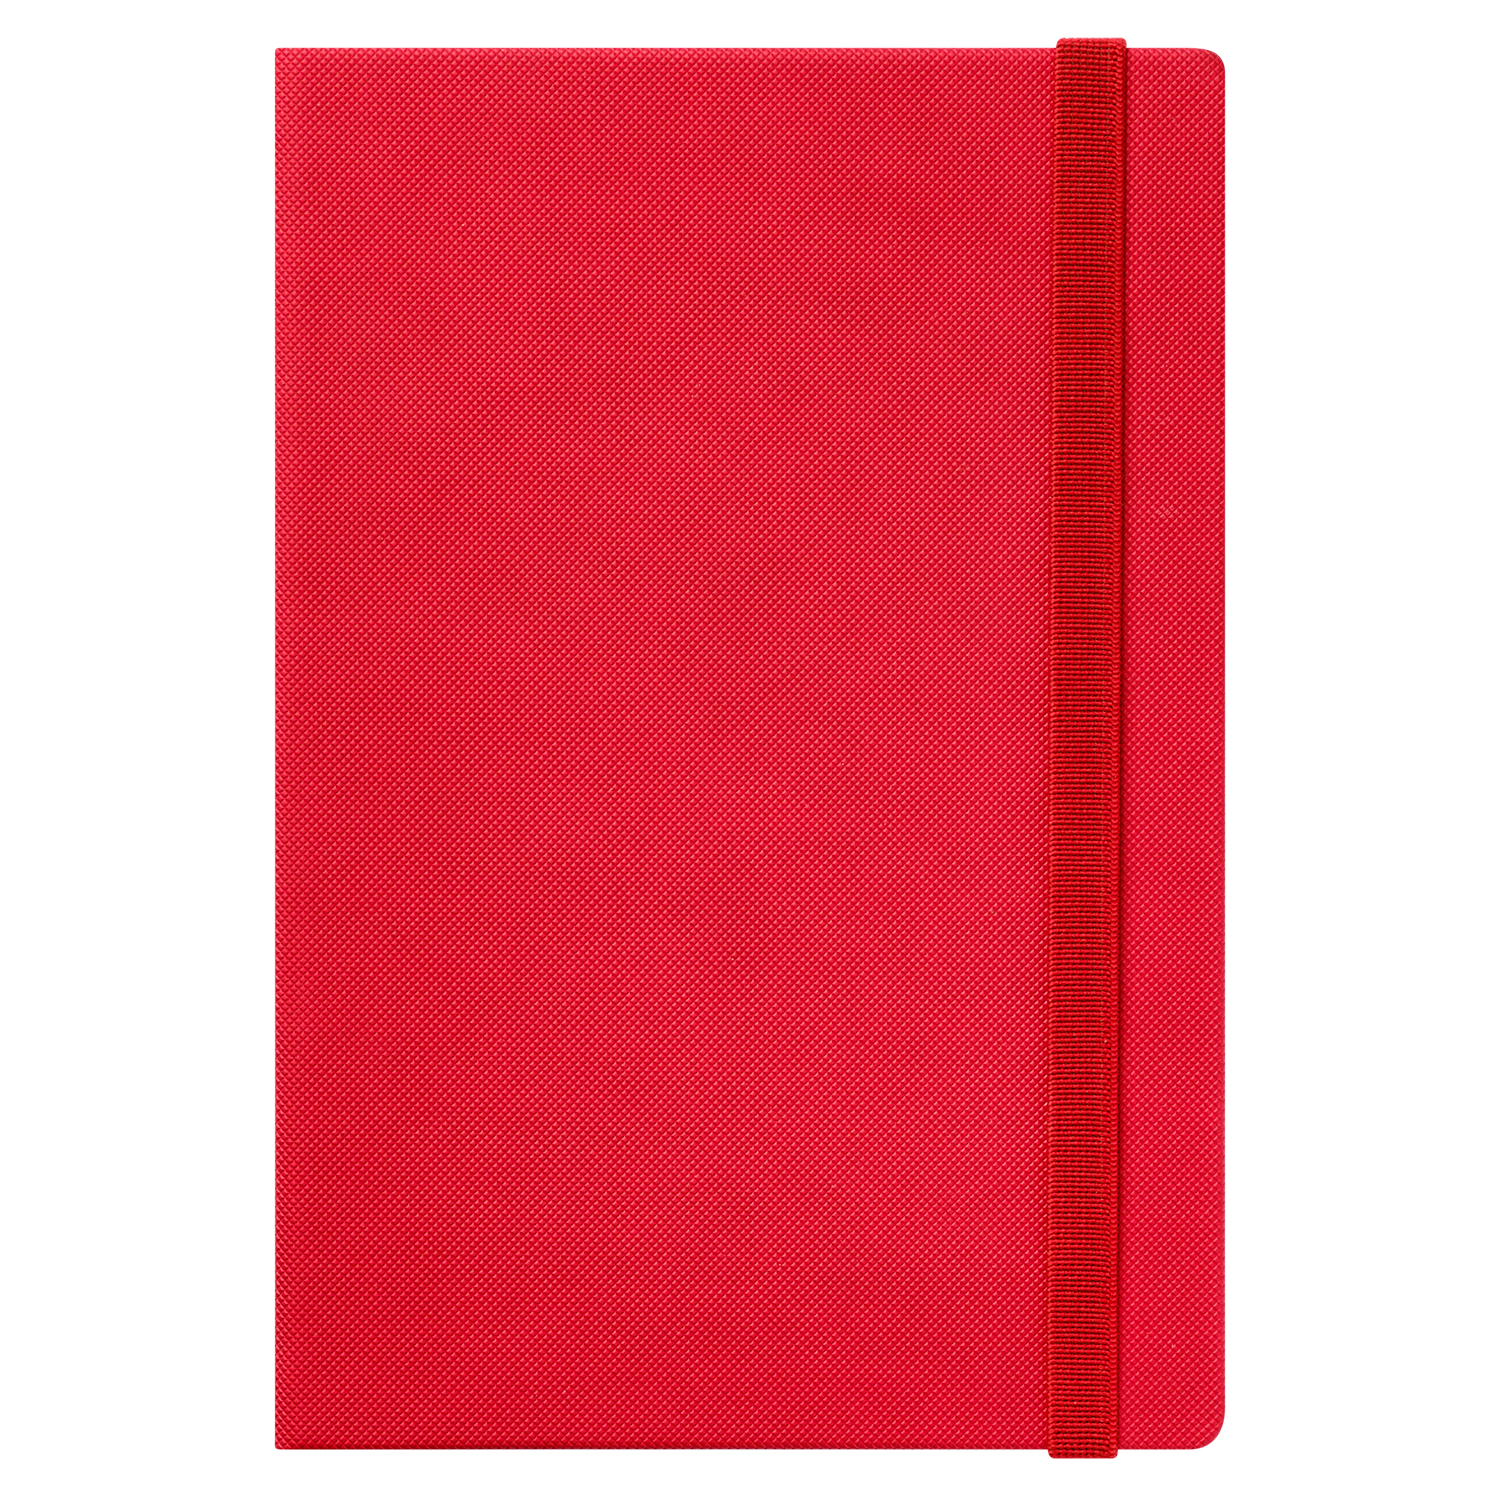 Ежедневник Canyon Btobook недатированный, красный (без упаковки, без стикера)